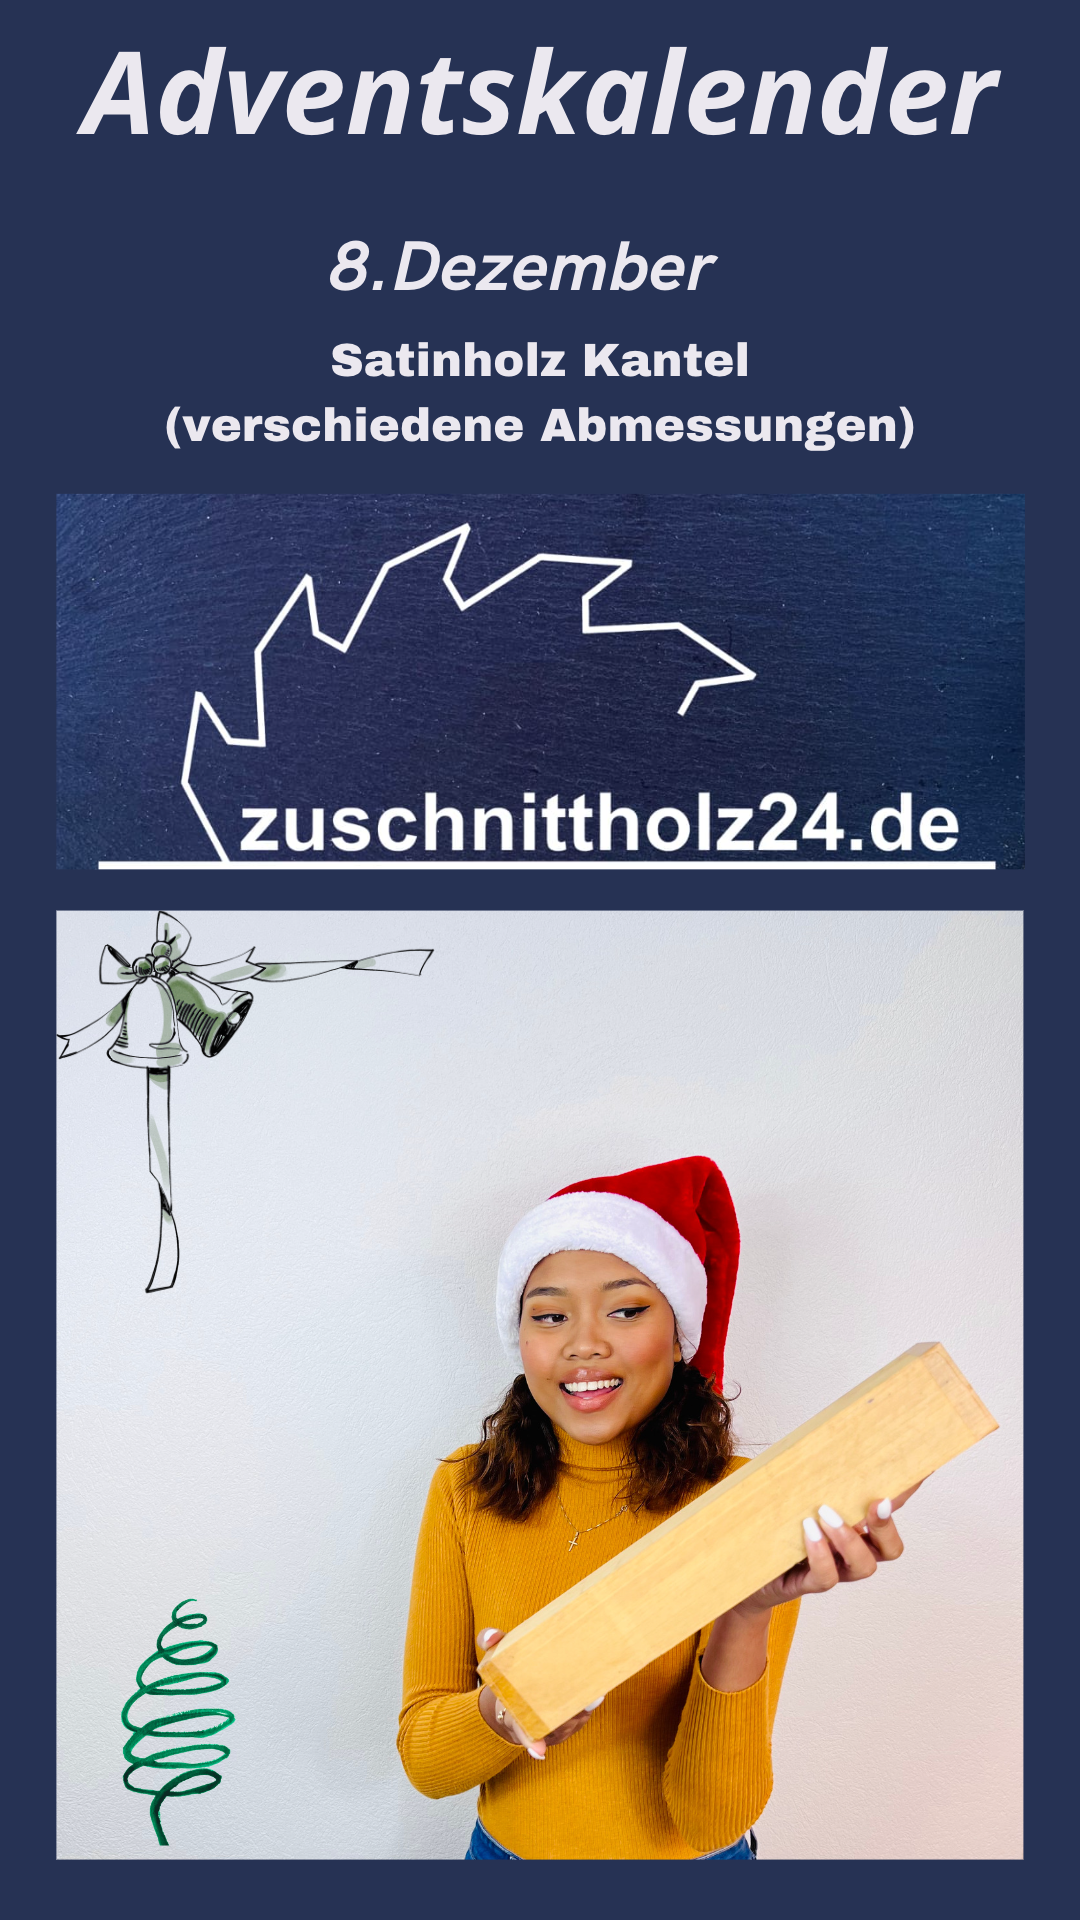 8.Adventskalender_Zuschnittholz24